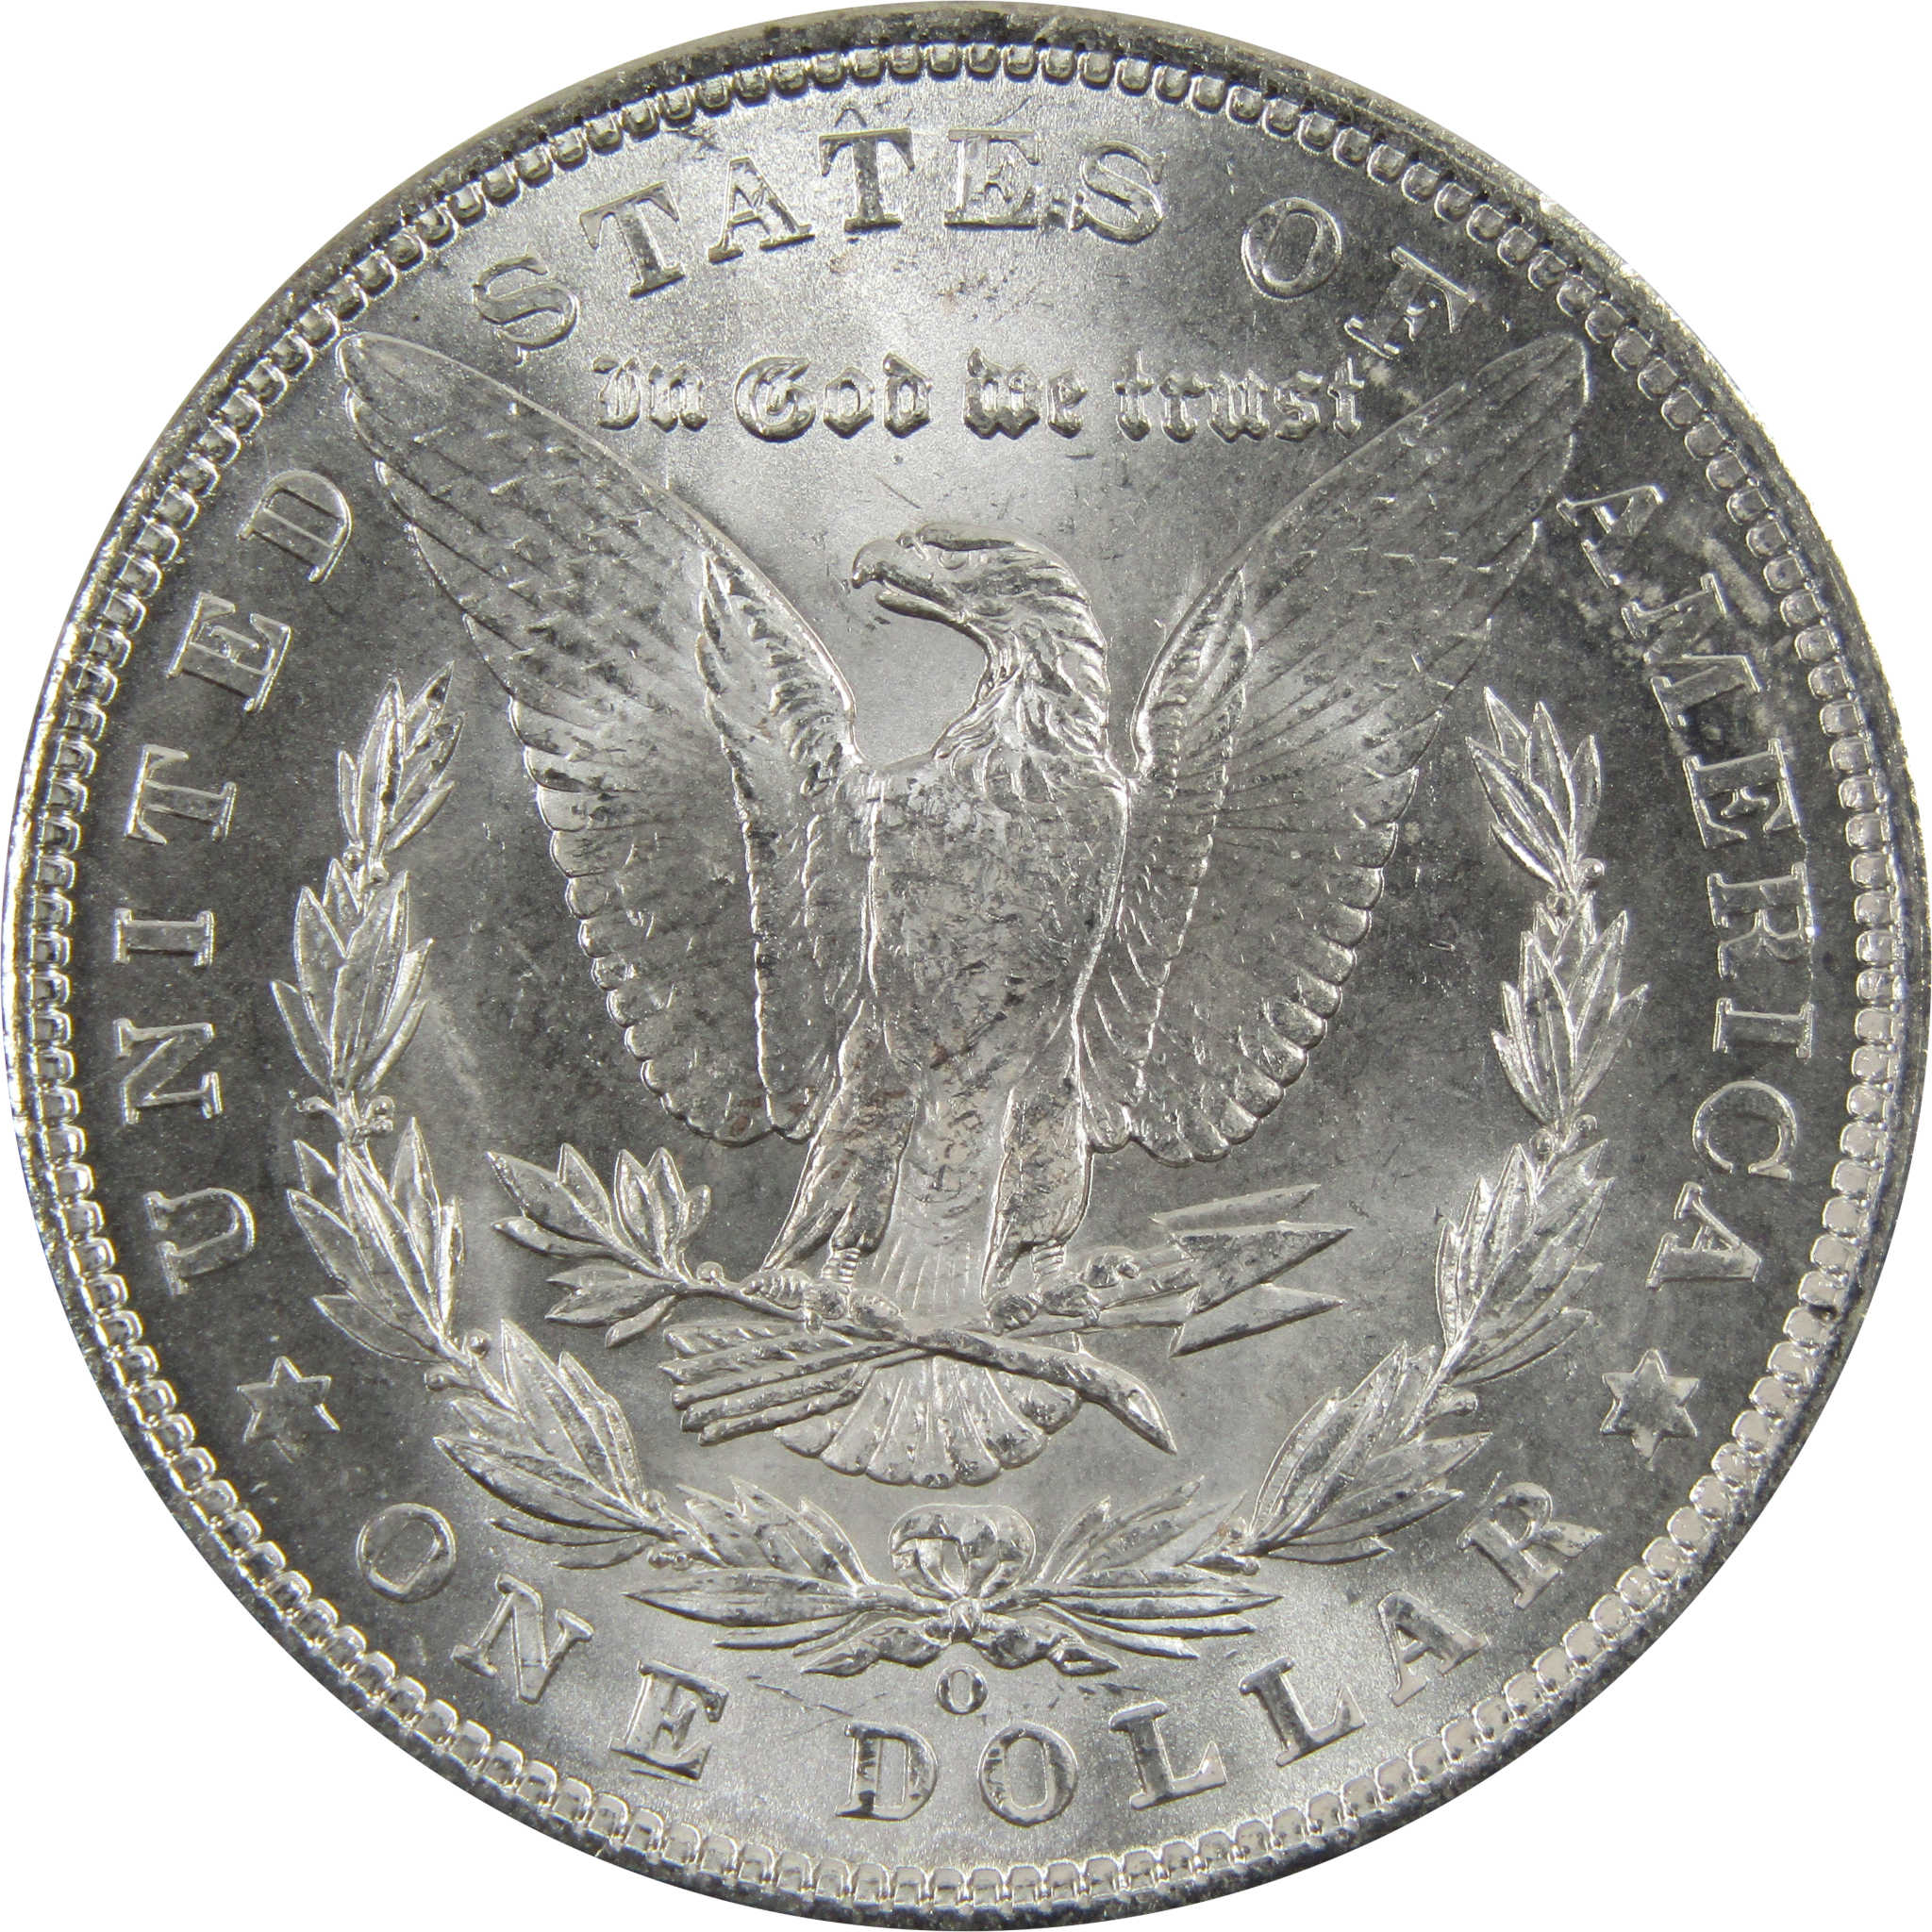 1904 O Morgan Dollar BU Uncirculated 90% Silver $1 Coin SKU:I5295 - Morgan coin - Morgan silver dollar - Morgan silver dollar for sale - Profile Coins &amp; Collectibles